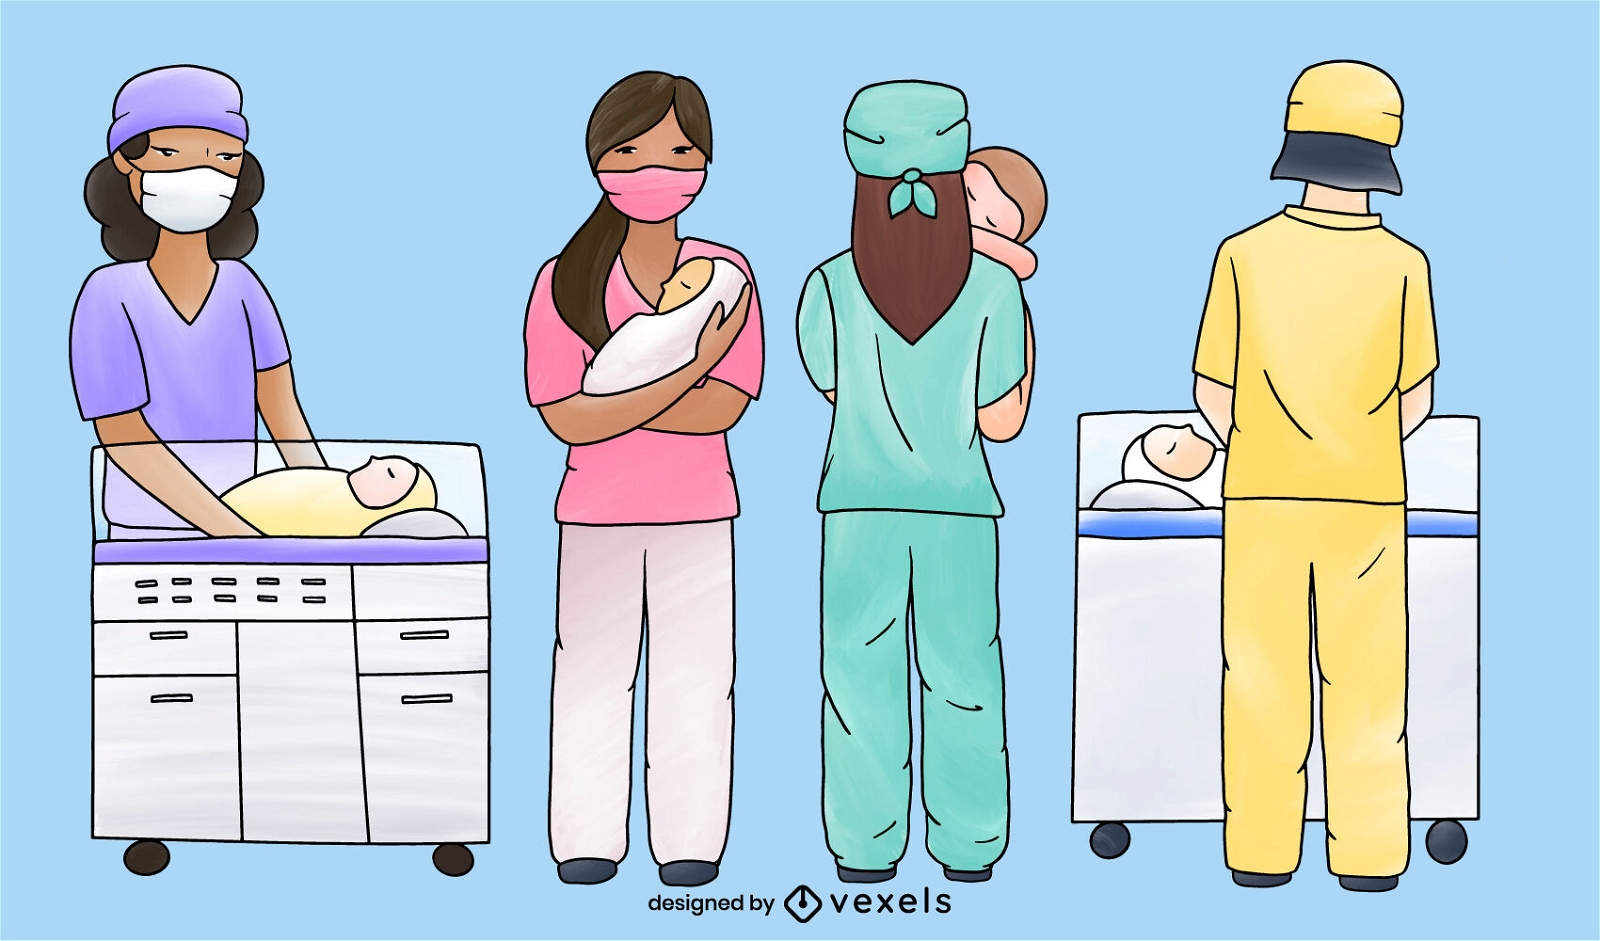 Enfermeras con ilustraci?n m?dica de beb?s.